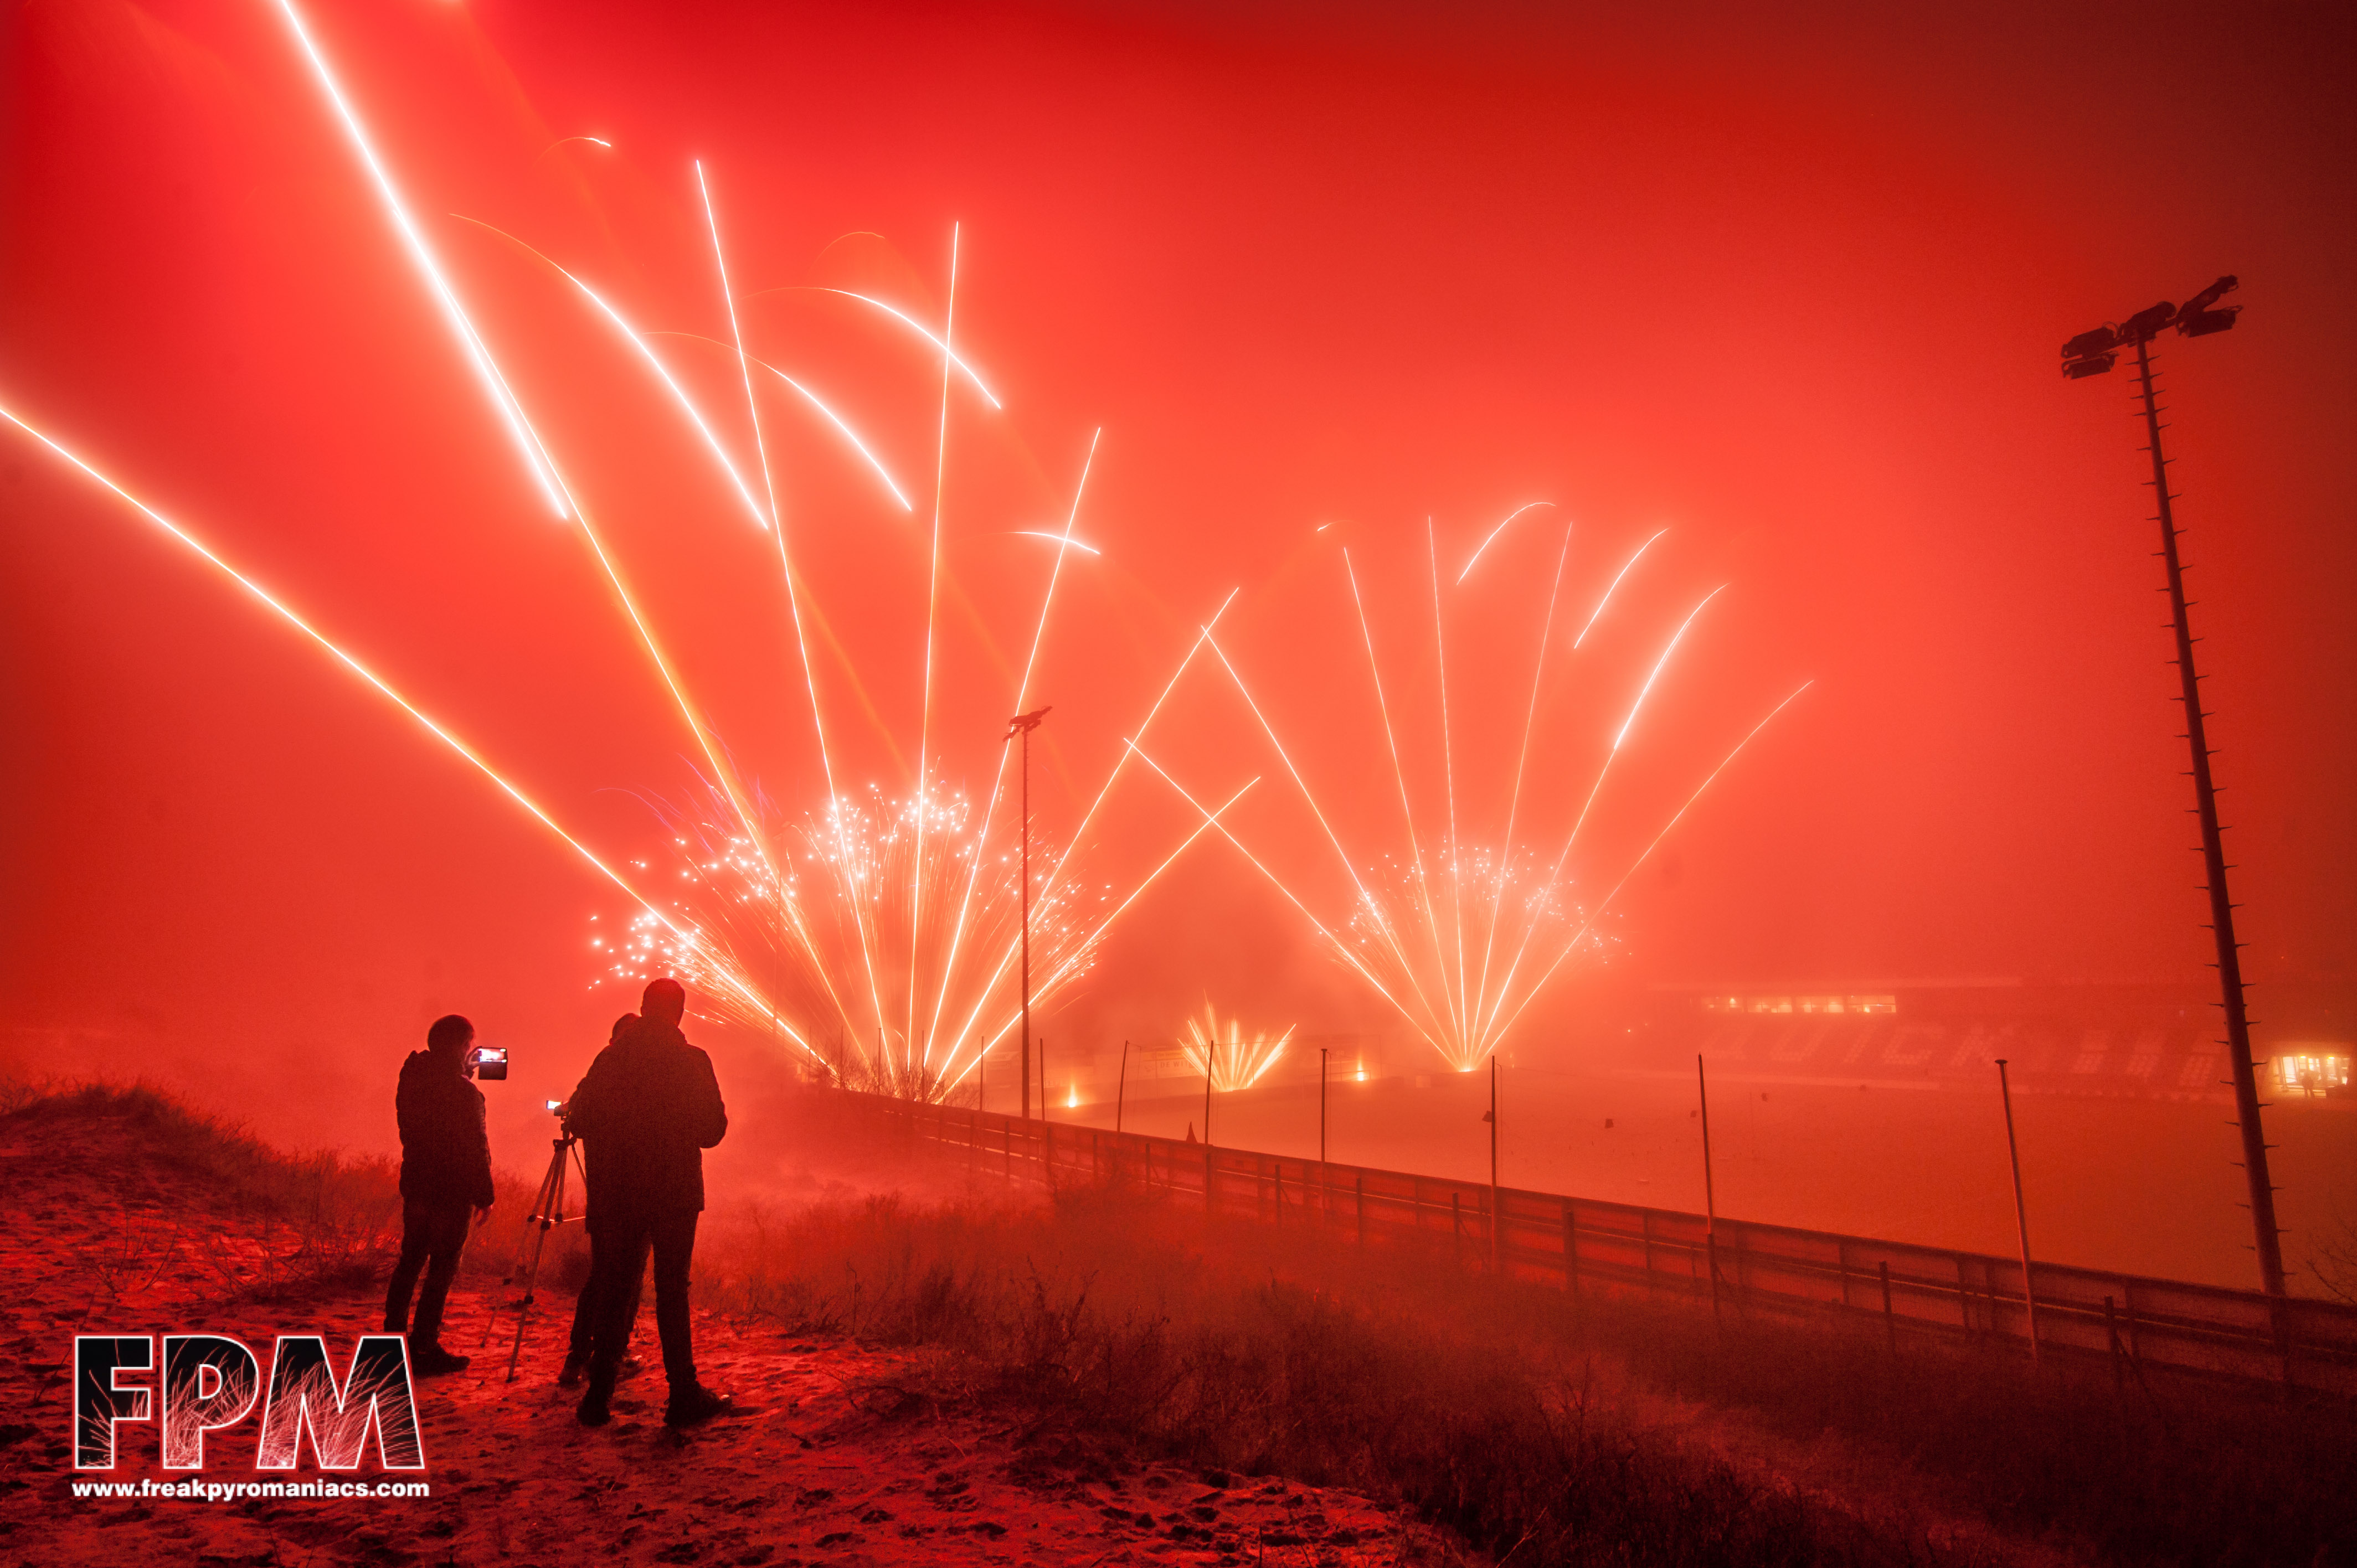 21-01-2023 : Midwinterfeest Katwijk, Quickboys, Xena Vuurwerk ism Evento Fireworks.